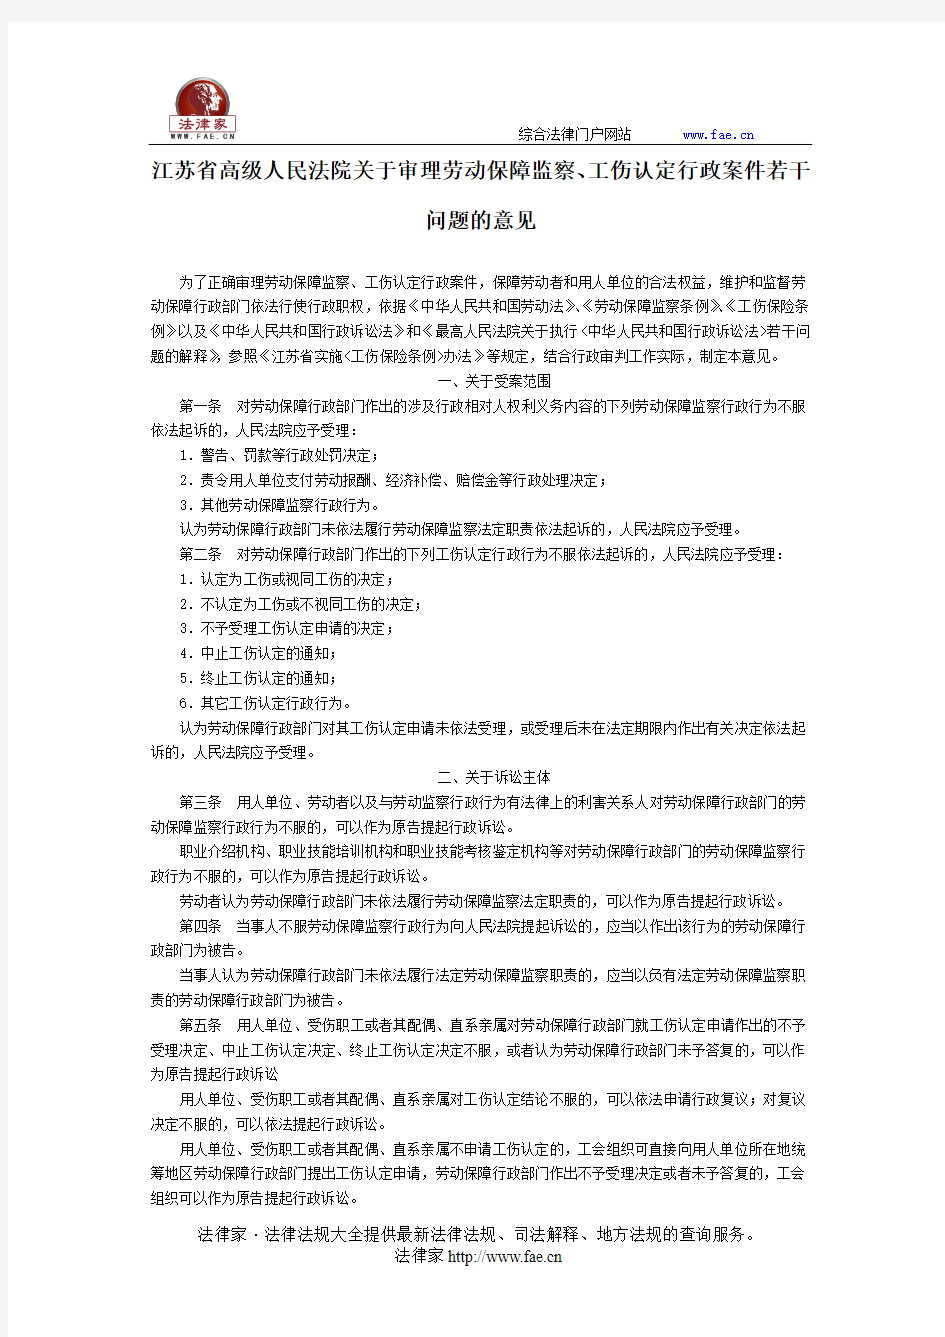 江苏省高级人民法院关于审理劳动保障监察、工伤认定行政案件若干问题的意见-地方司法规范